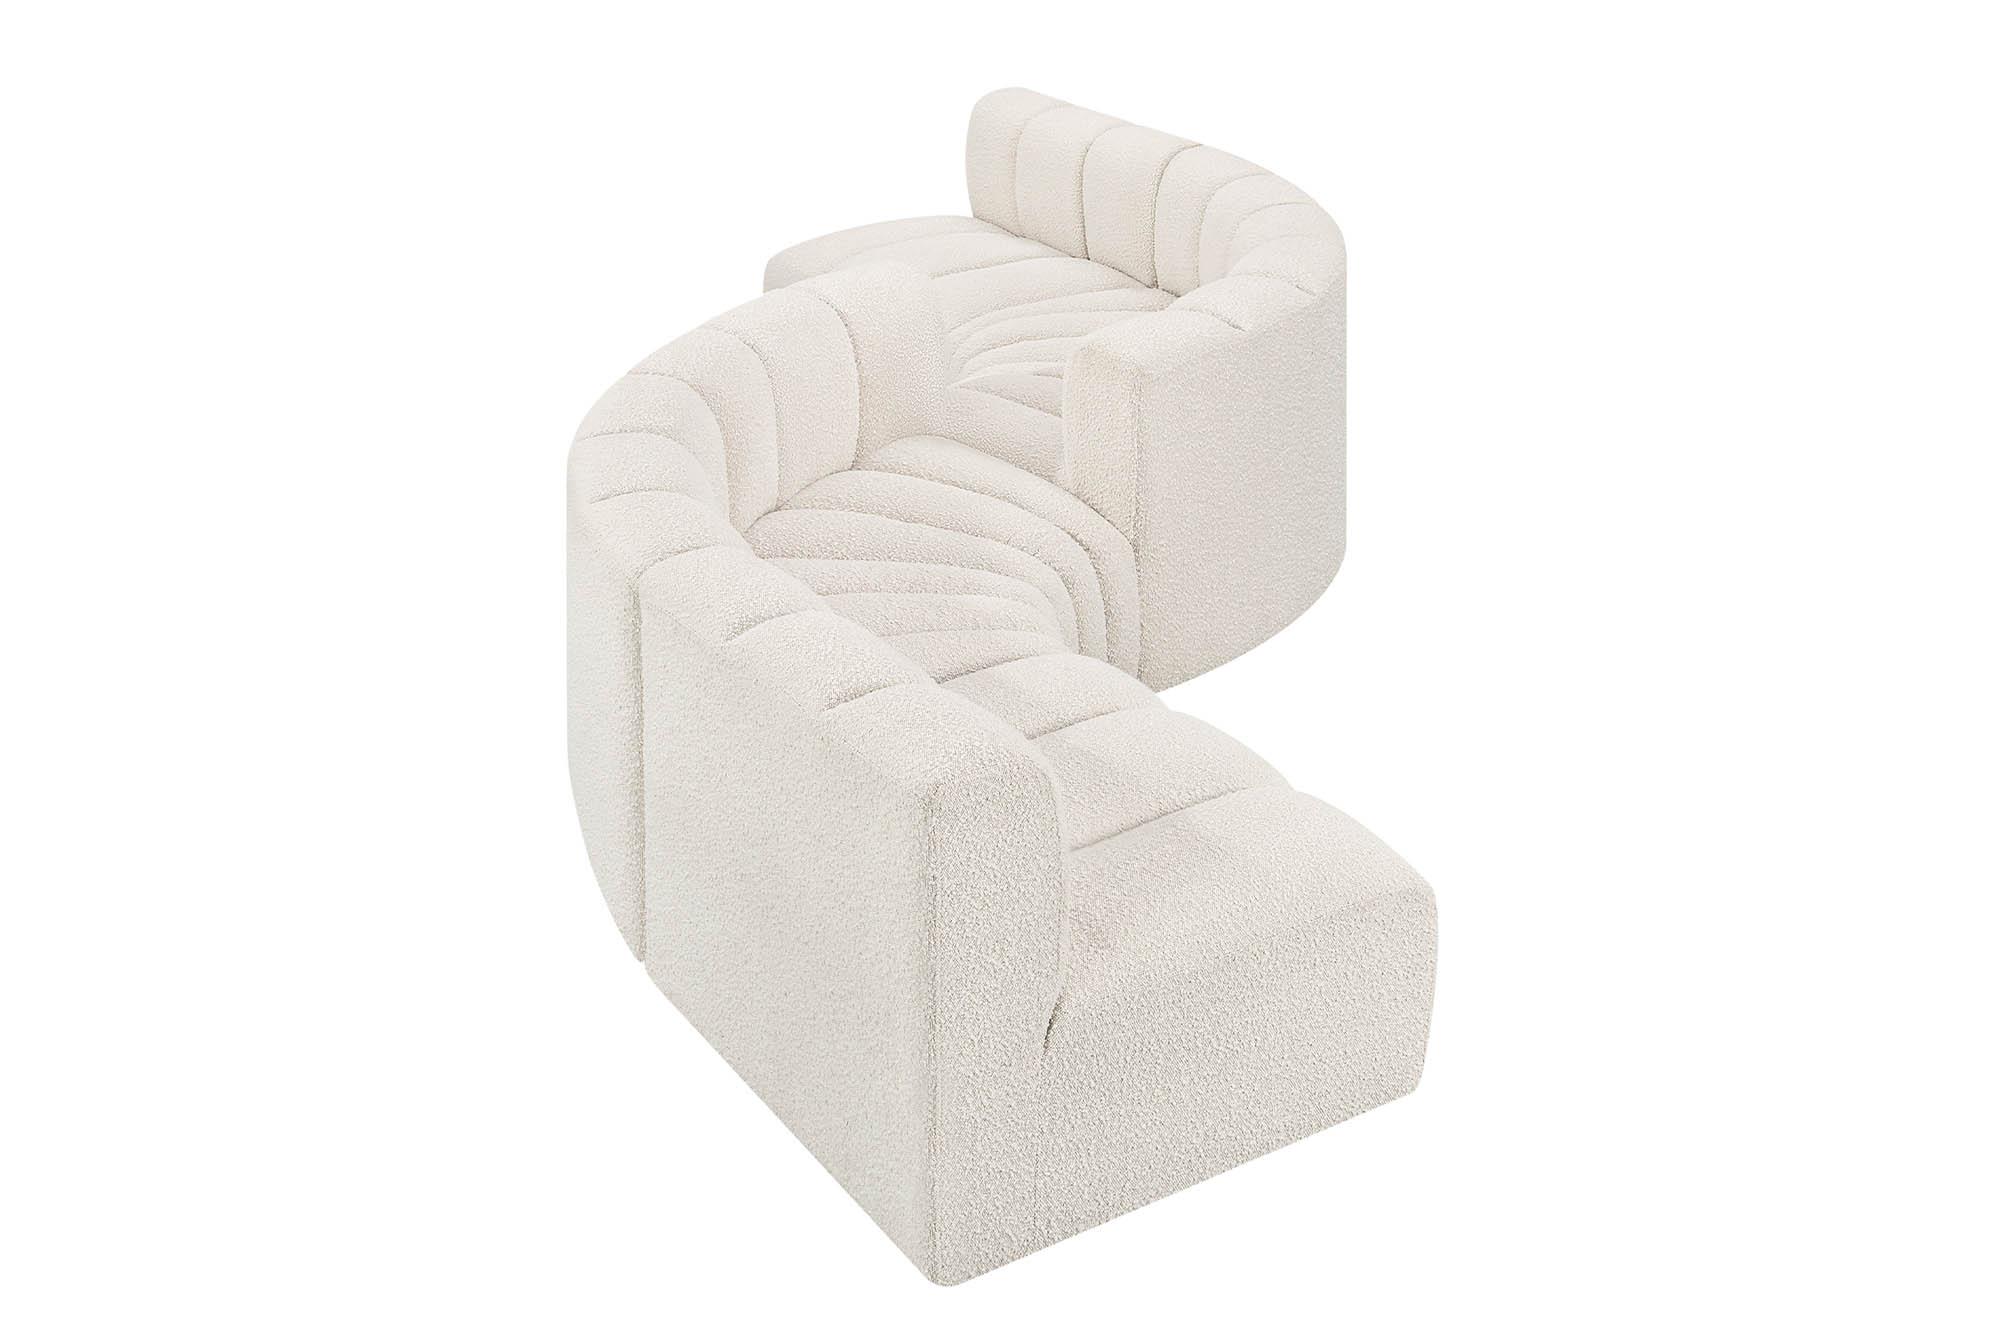 

    
Meridian Furniture ARC 102Cream-S6D Modular Sectional Sofa Cream 102Cream-S6D
